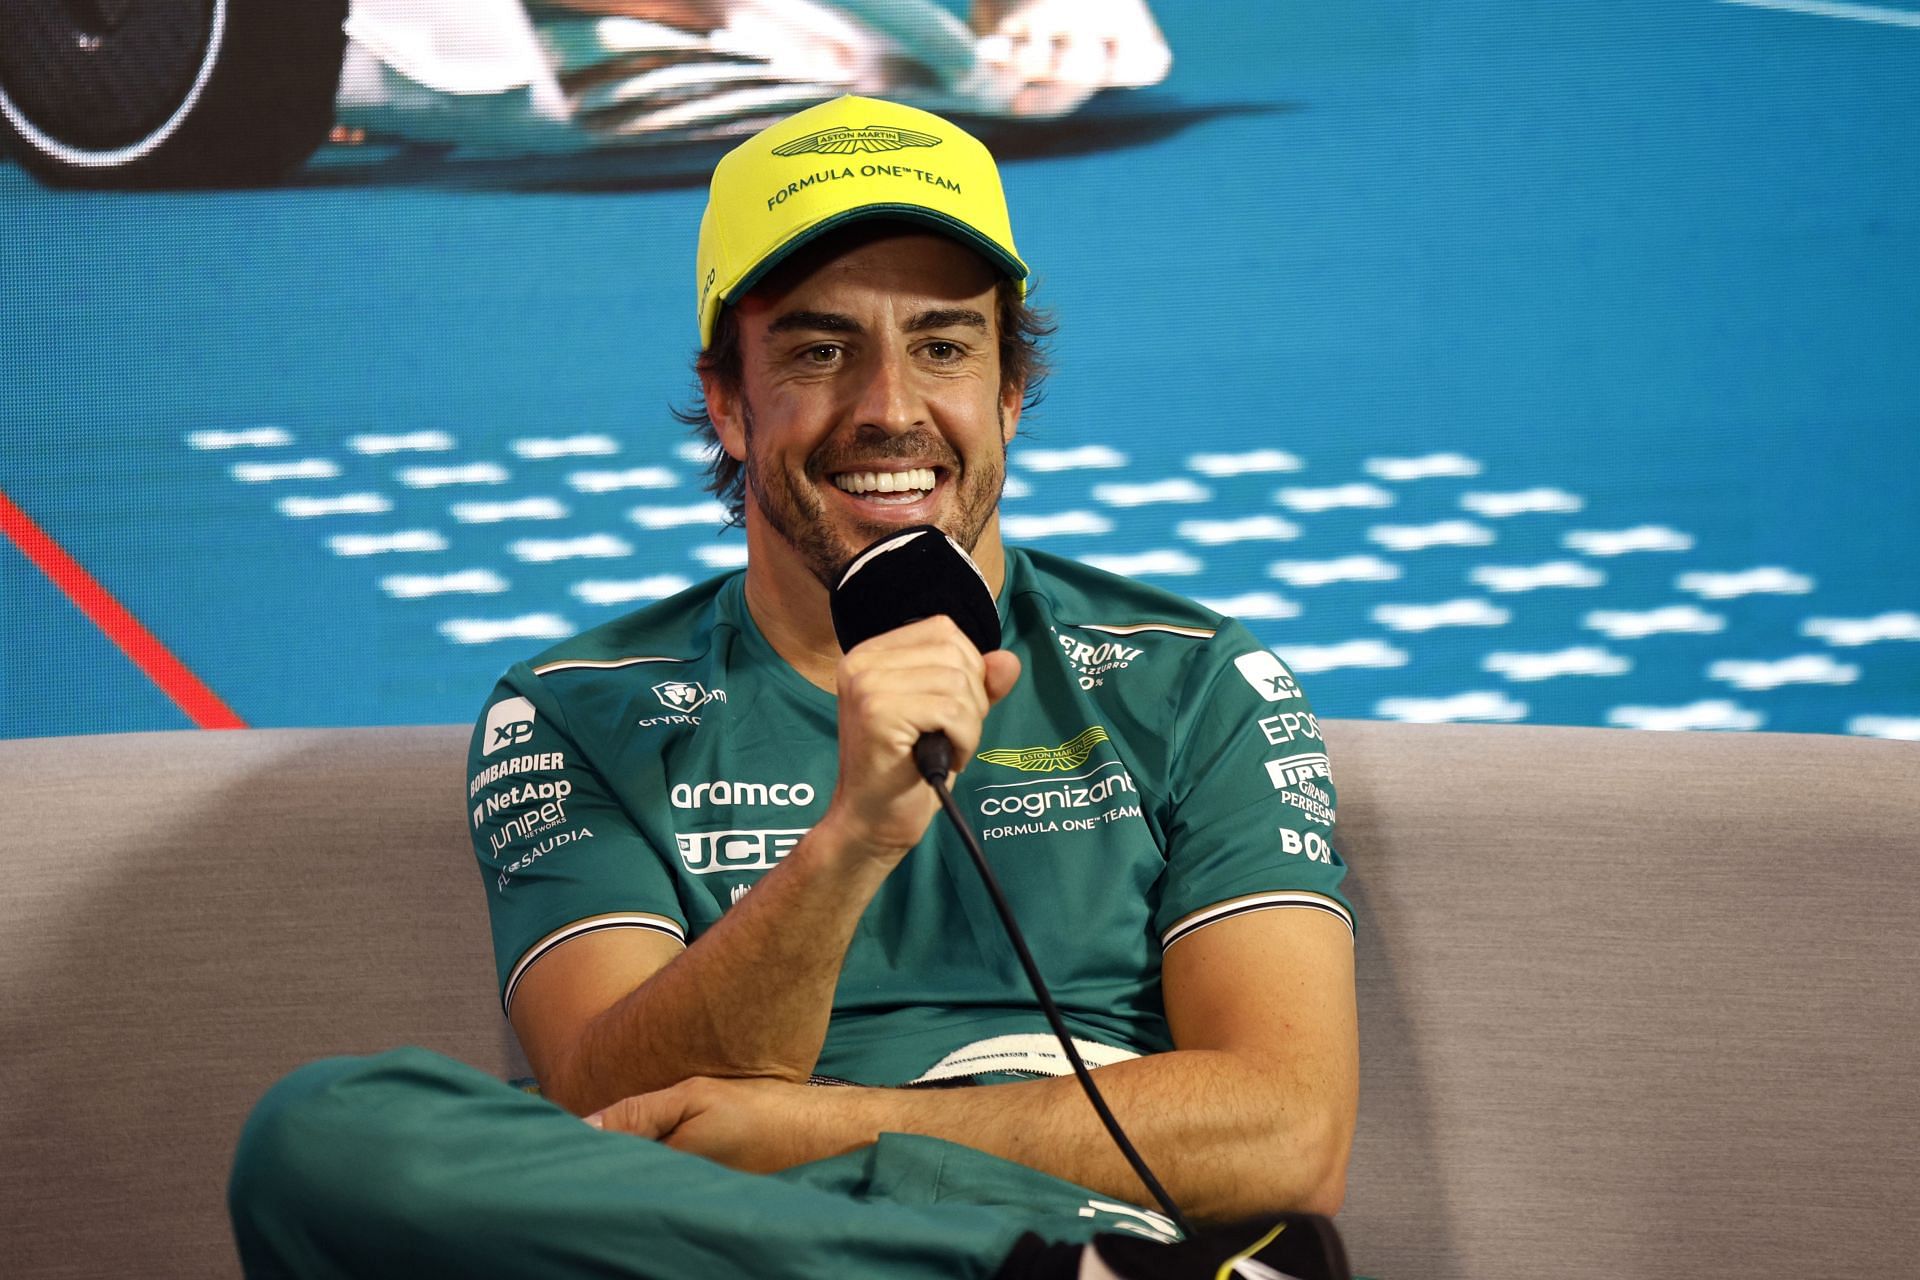 F1 Grand Prix of Miami - Fernando Alonso